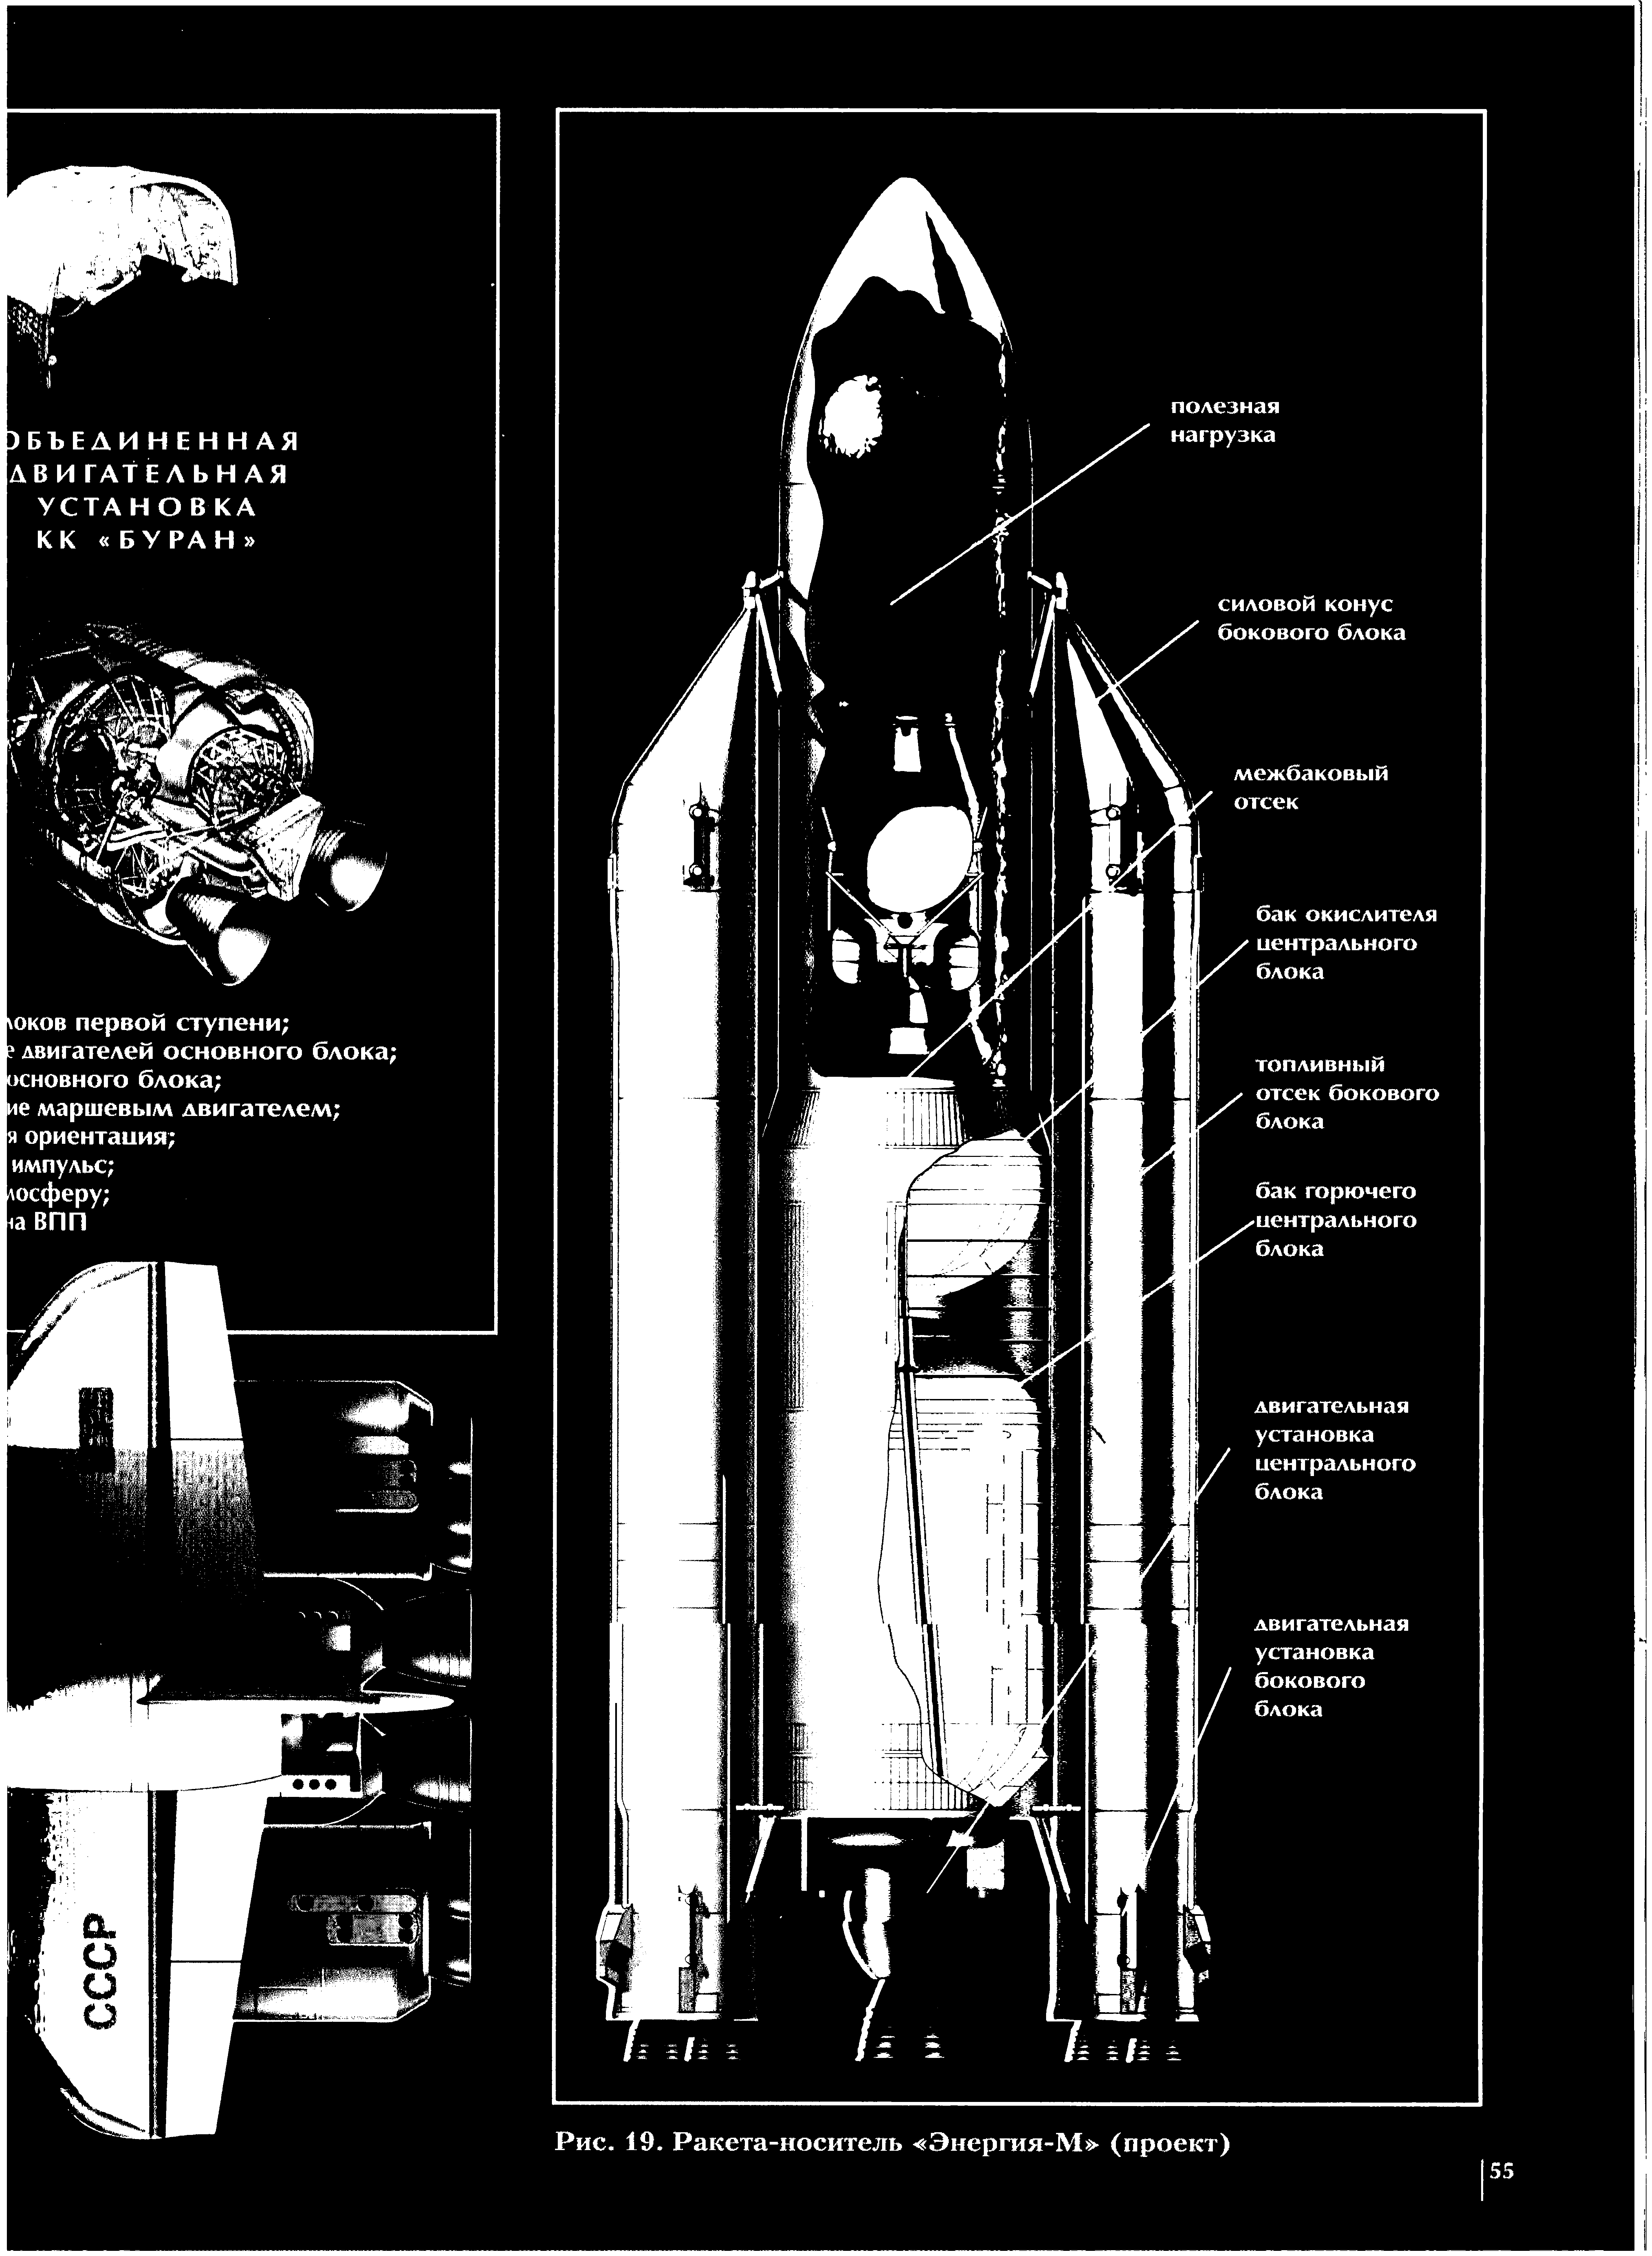 Рис. 19. Ракета-носитель Энергия-М (проект)
